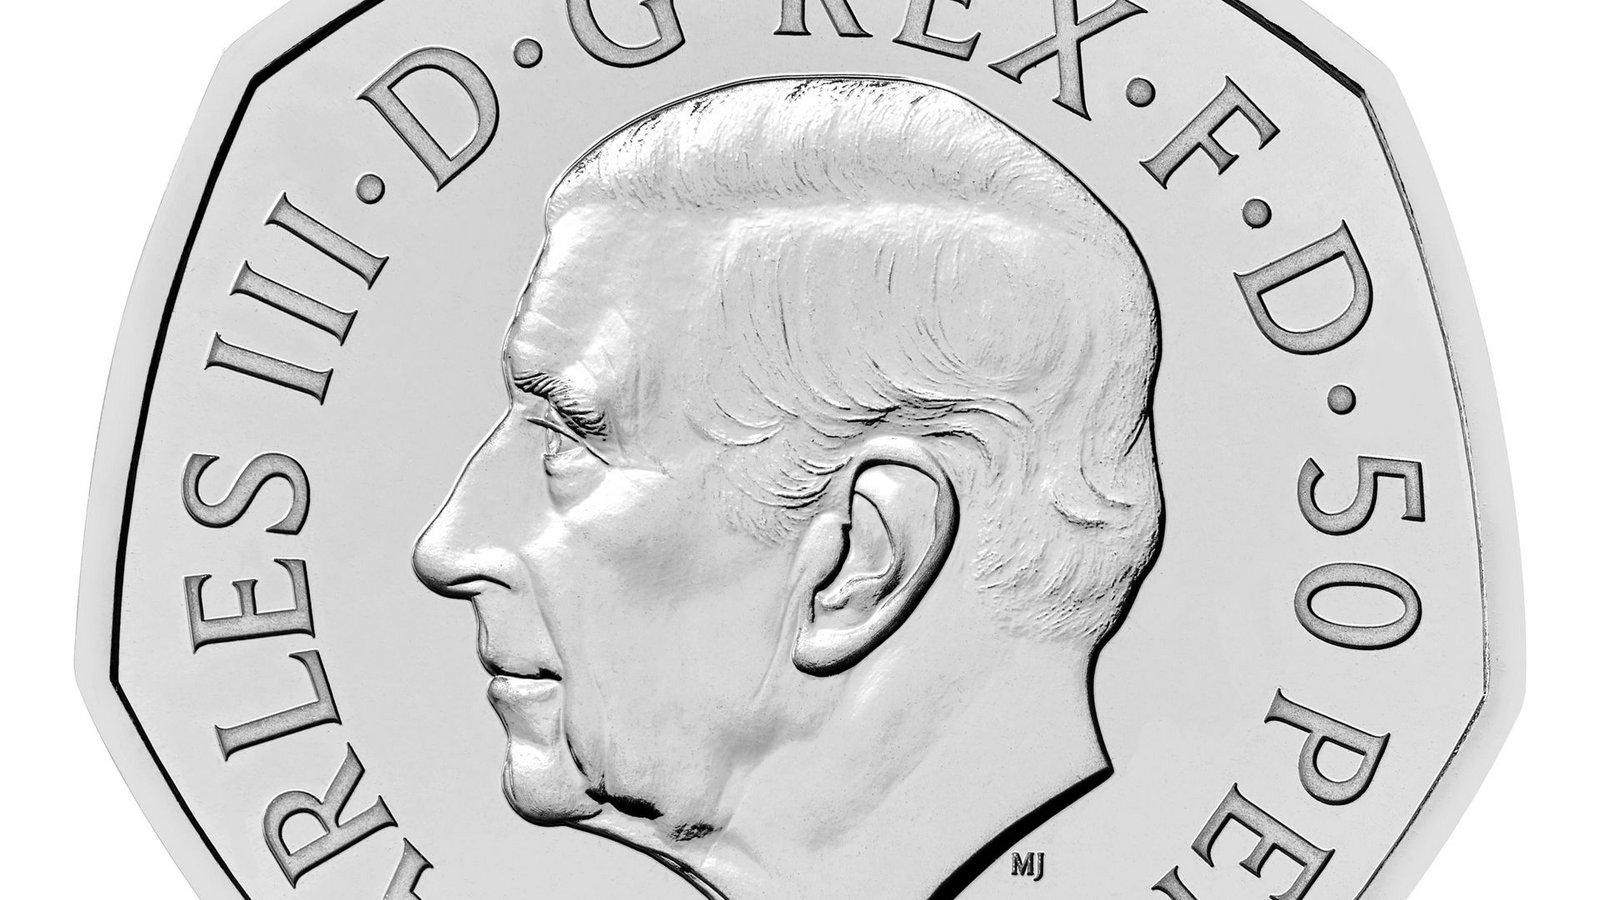 Die Vorderseite der neuen 50-Pence-Münze zeigt das Porträt von König Charles III.Foto: The Royal Mint/PA Media/dpa